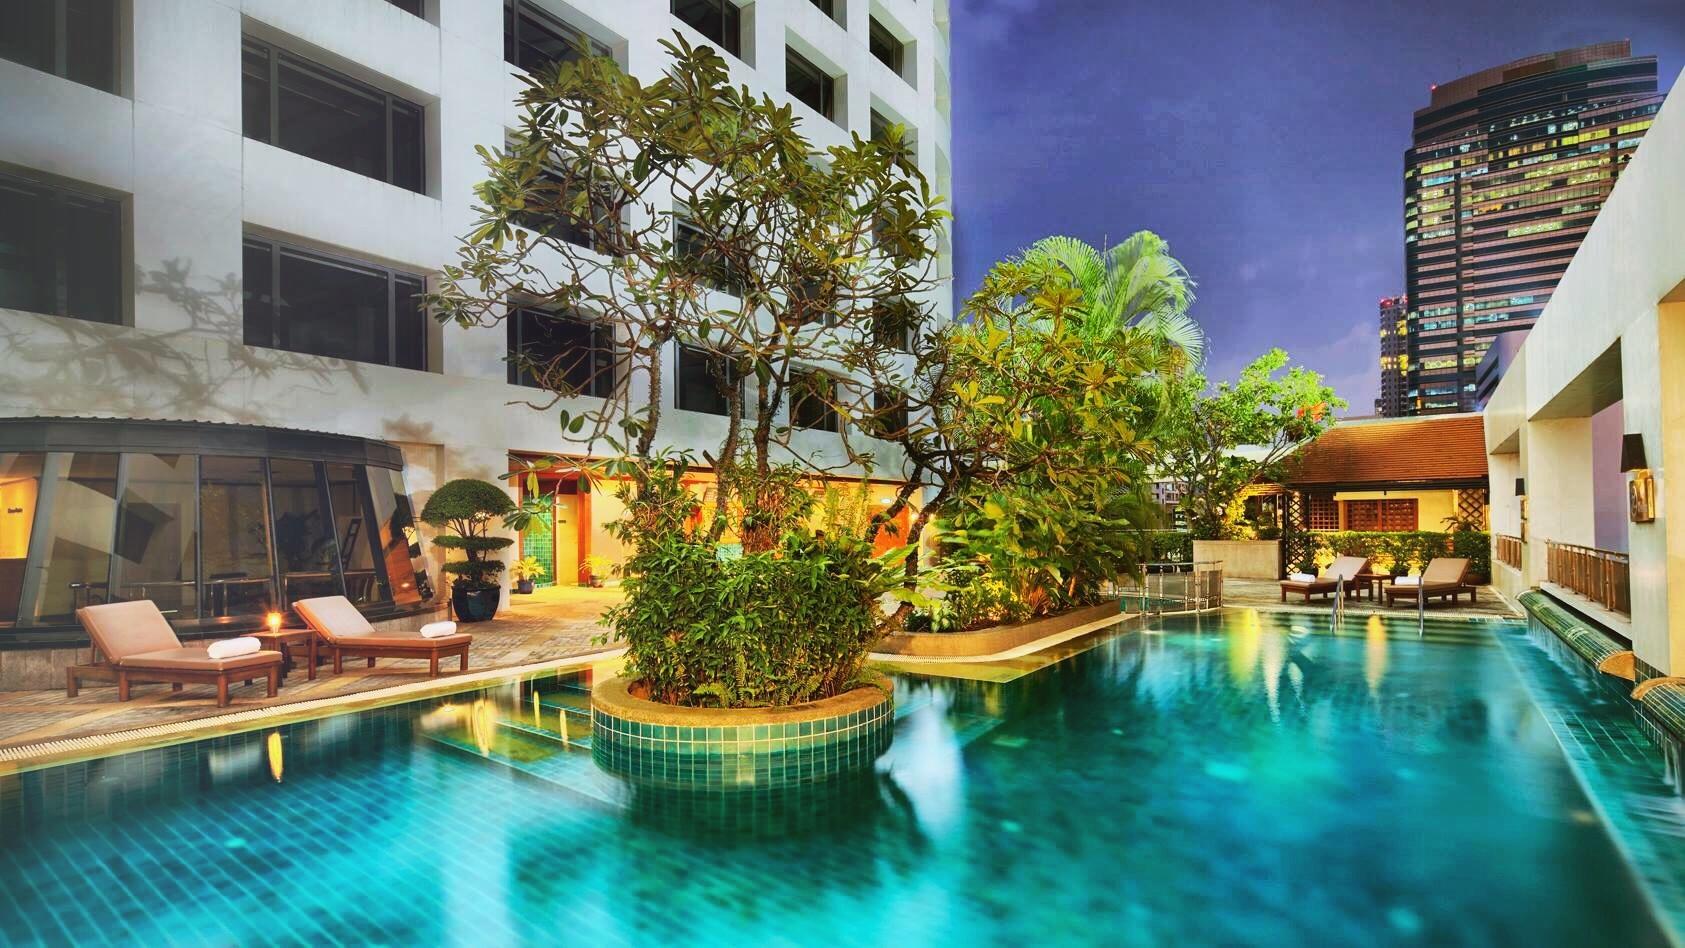 曼谷河畔安納塔拉度假酒店 - Anantara Riverside Bangkok Resort - 398 則旅客評論和比價